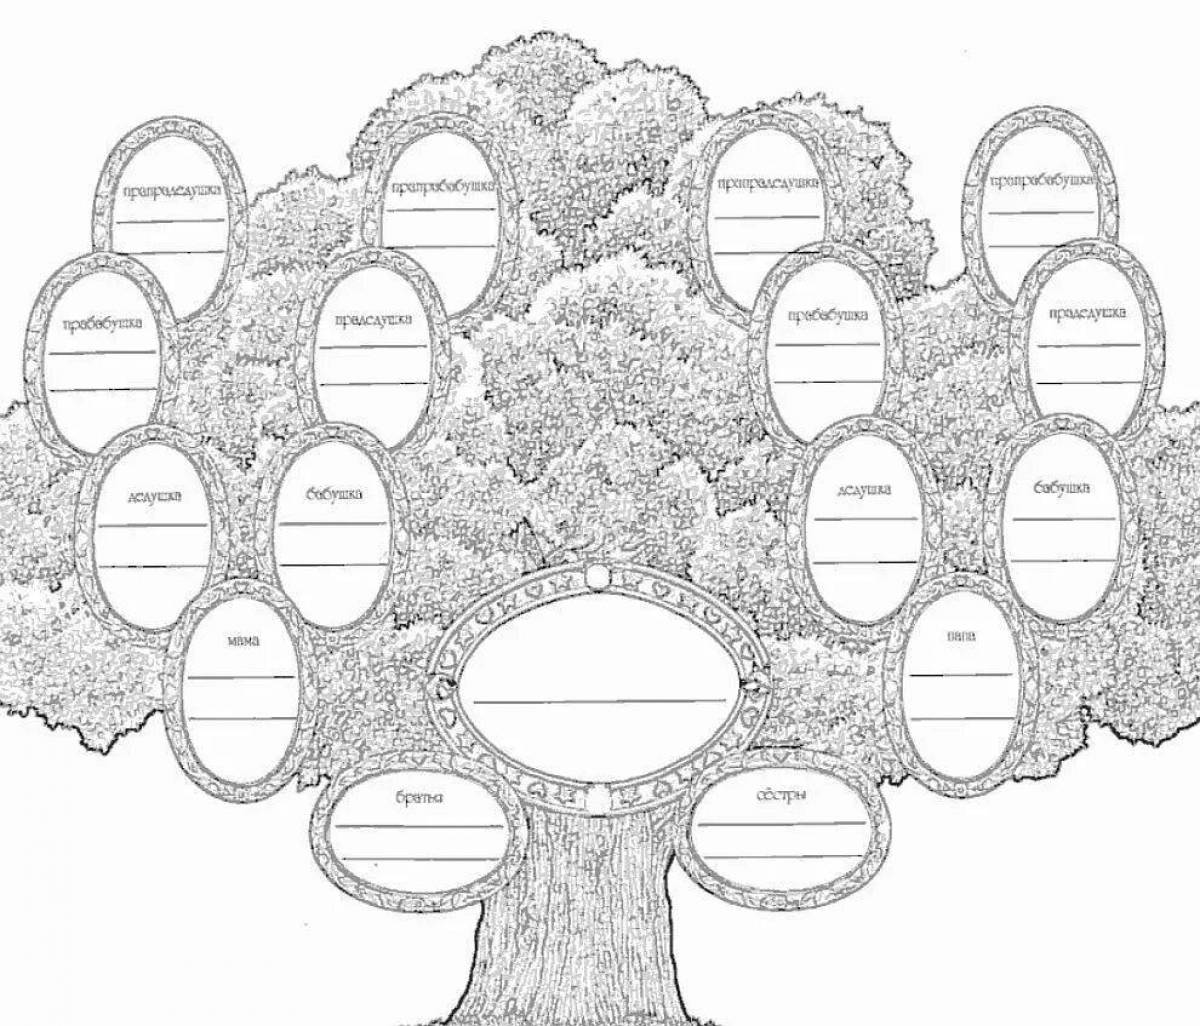 Шаблон для семейного древа распечатать. Геологическое Древо семьи. Древо семьи рисунок схема. Геологическое дерево схема. Генеалогическое дерево моей семьи.